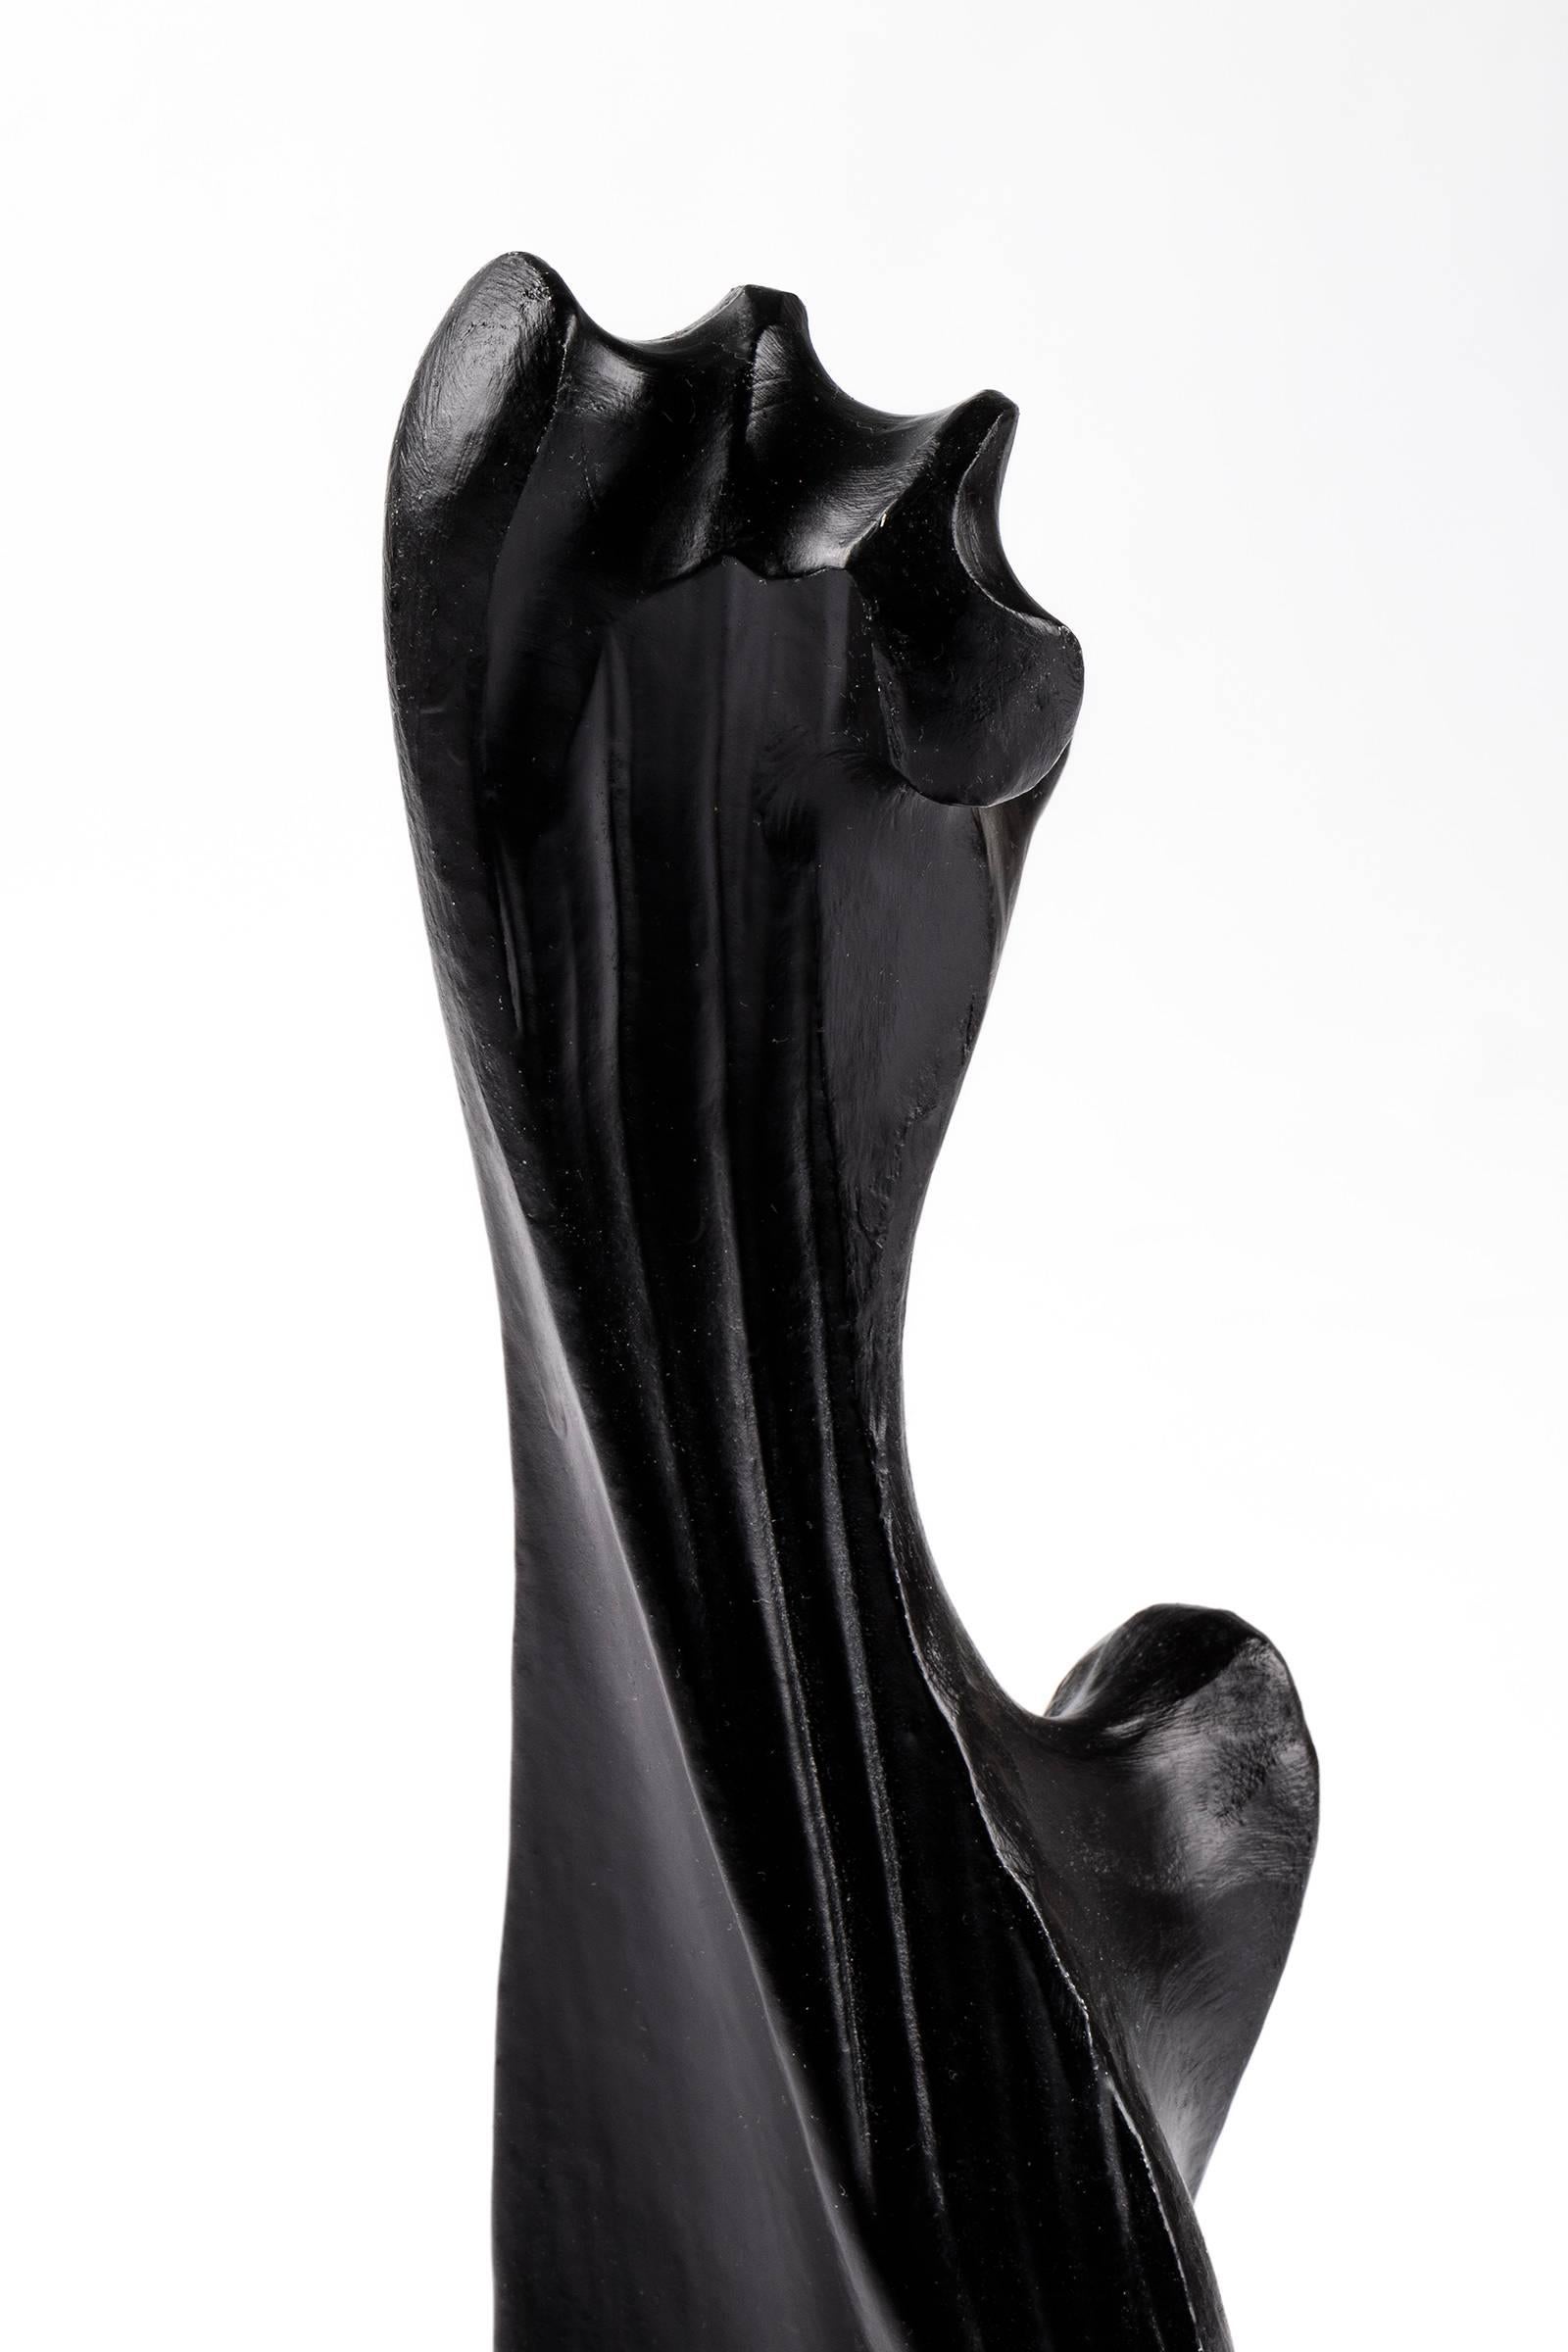 American Mario Dal Fabbro Sculpture For Sale